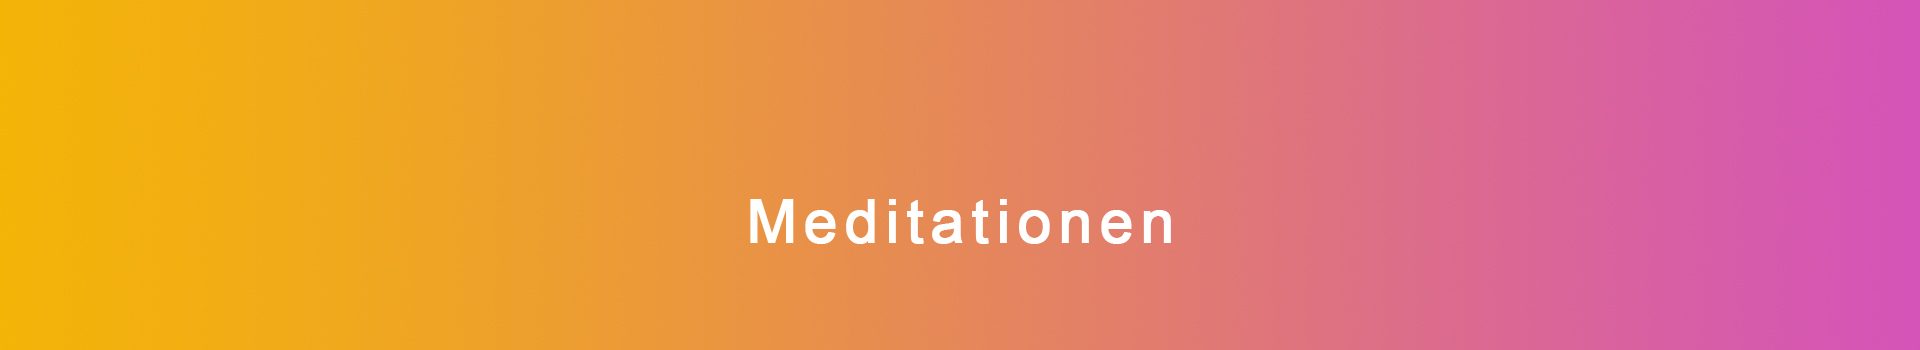 Meditationen-Headerbild-neu